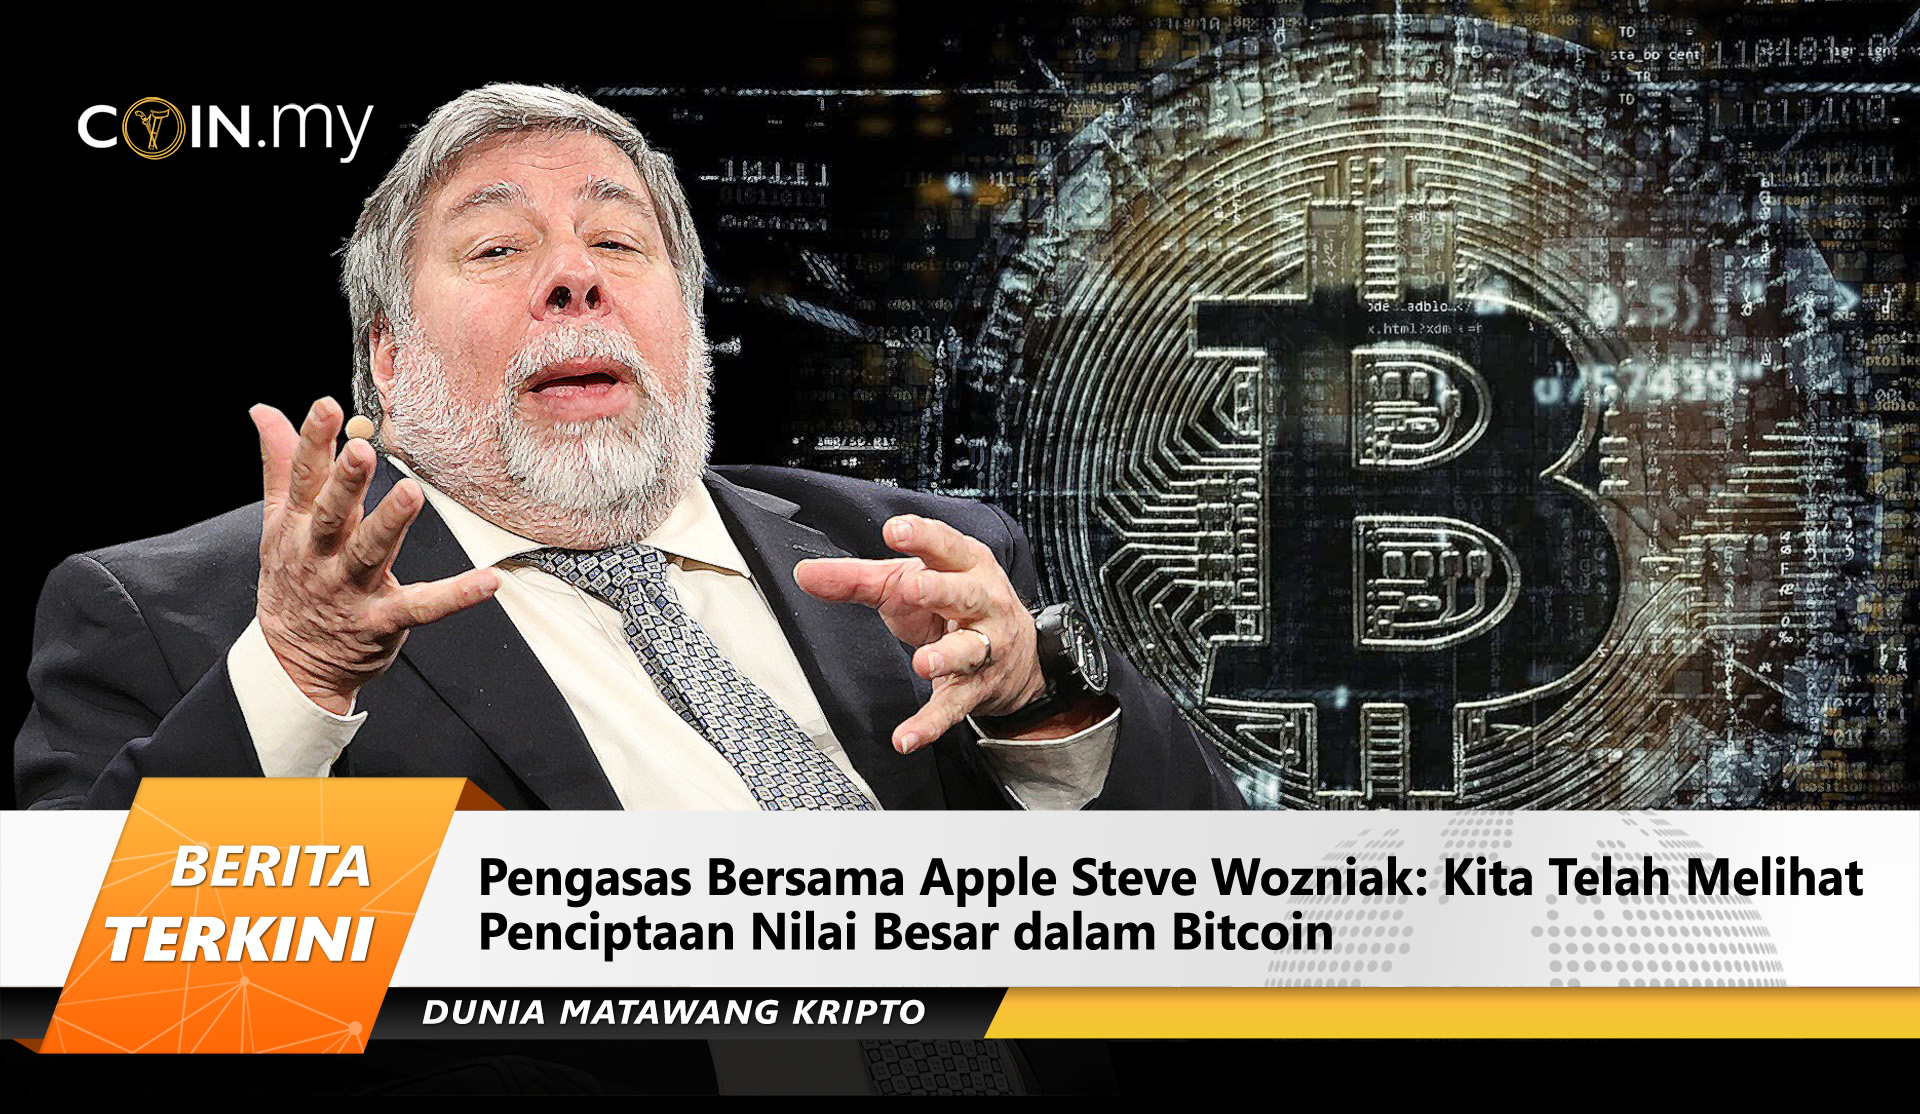 Pengasas Bersama Apple Steve Wozniak: Kita Telah Melihat ...